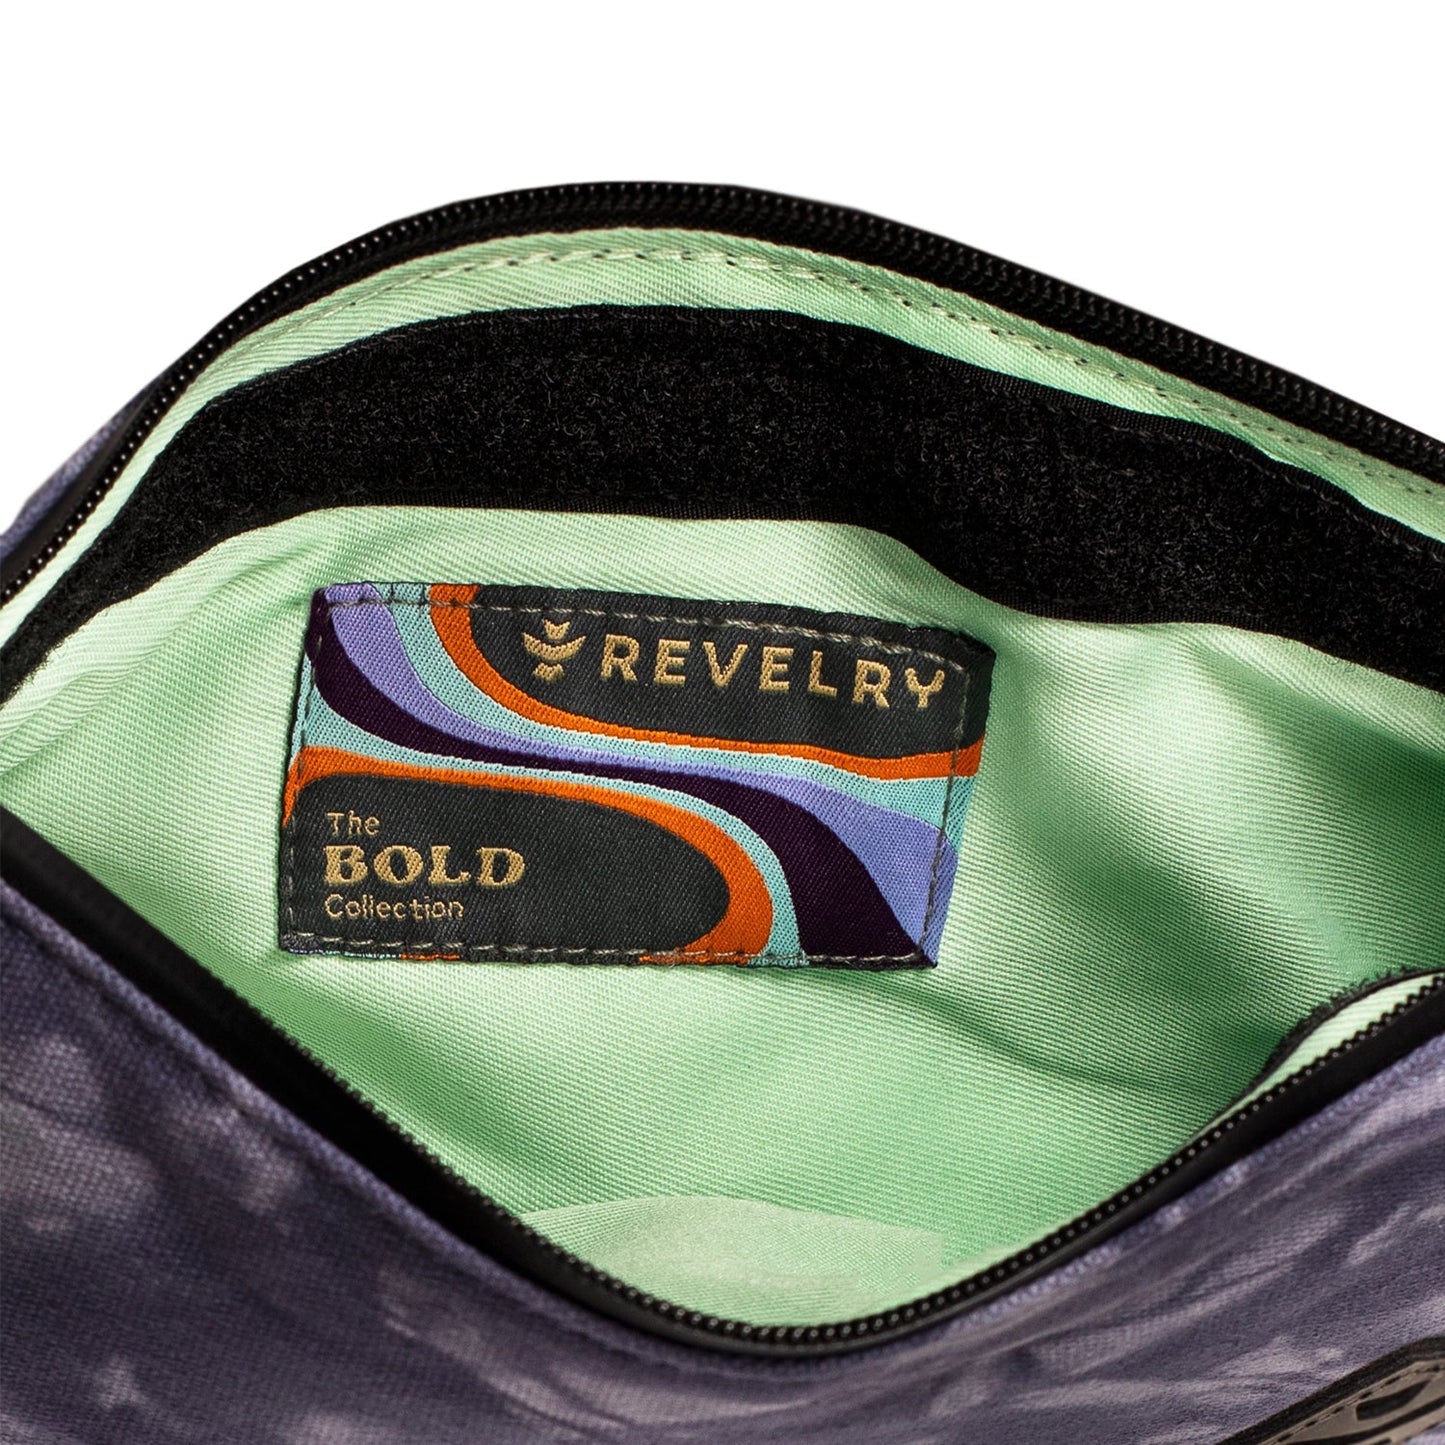 Revelry Broker - Smell Proof Zippered Stash Bag